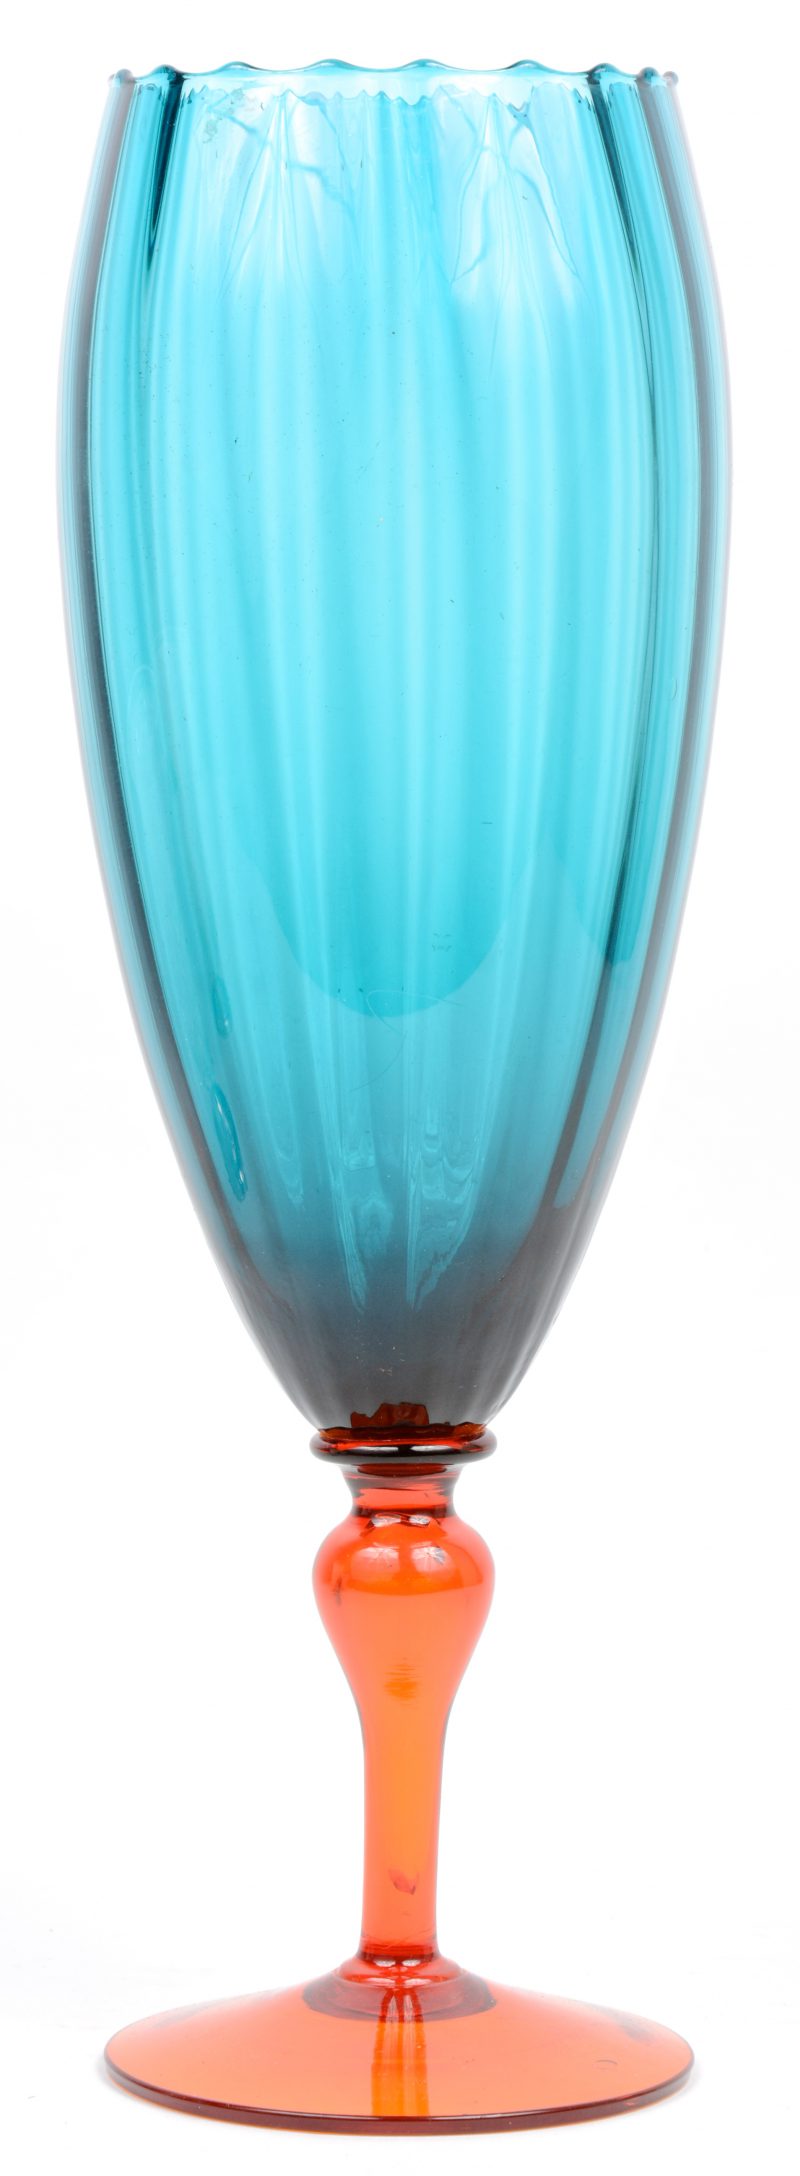 Tweekleurige glazen vaas met voetstuk.